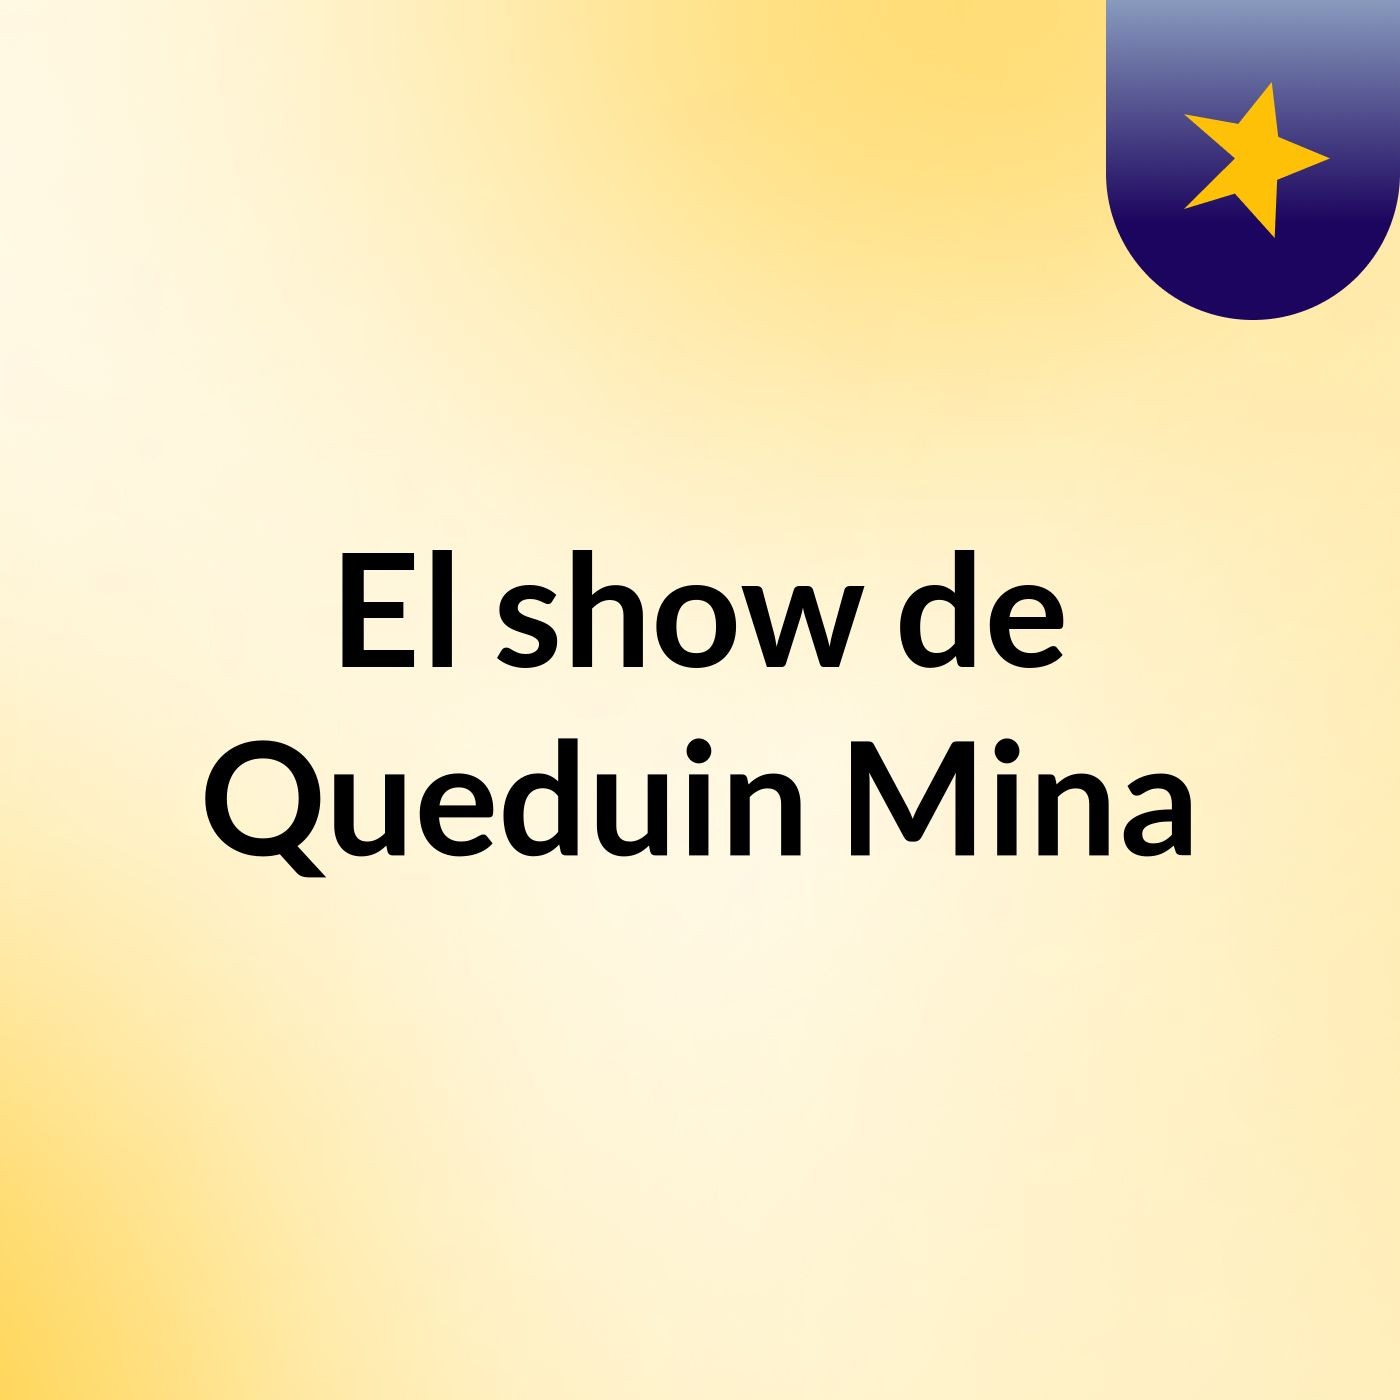 El show de Queduin Mina